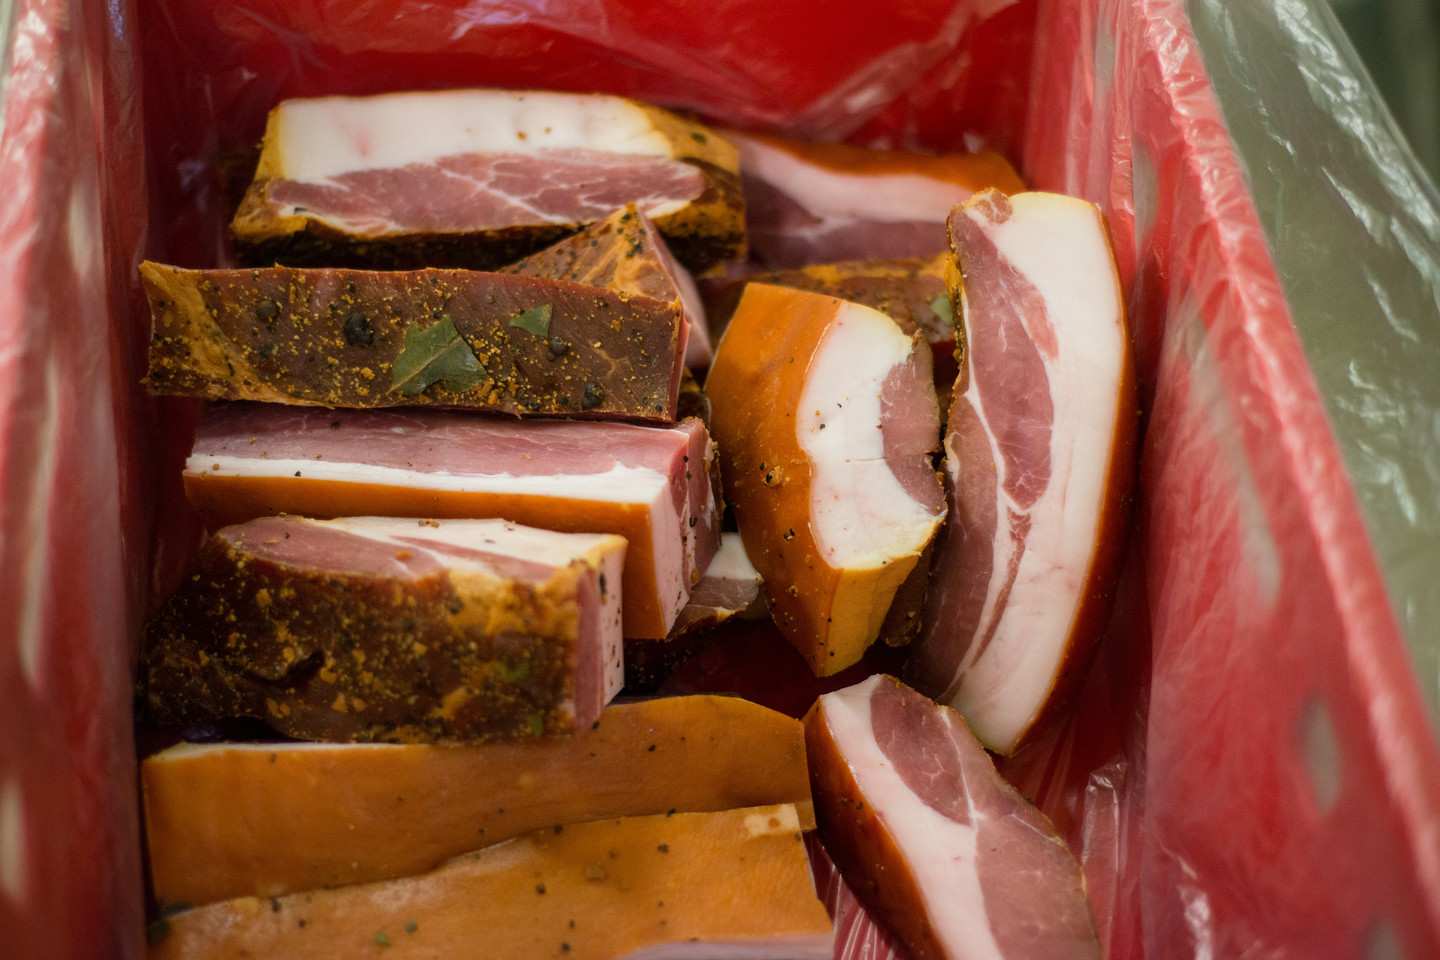 Rūkytais mėsos gaminiais iš transporto priemonės prekiavęs asmuo neturėjo maisto tvarkymo subjekto patvirtinimo pažymėjimo. <br>J.Stacevičiaus nuotr.